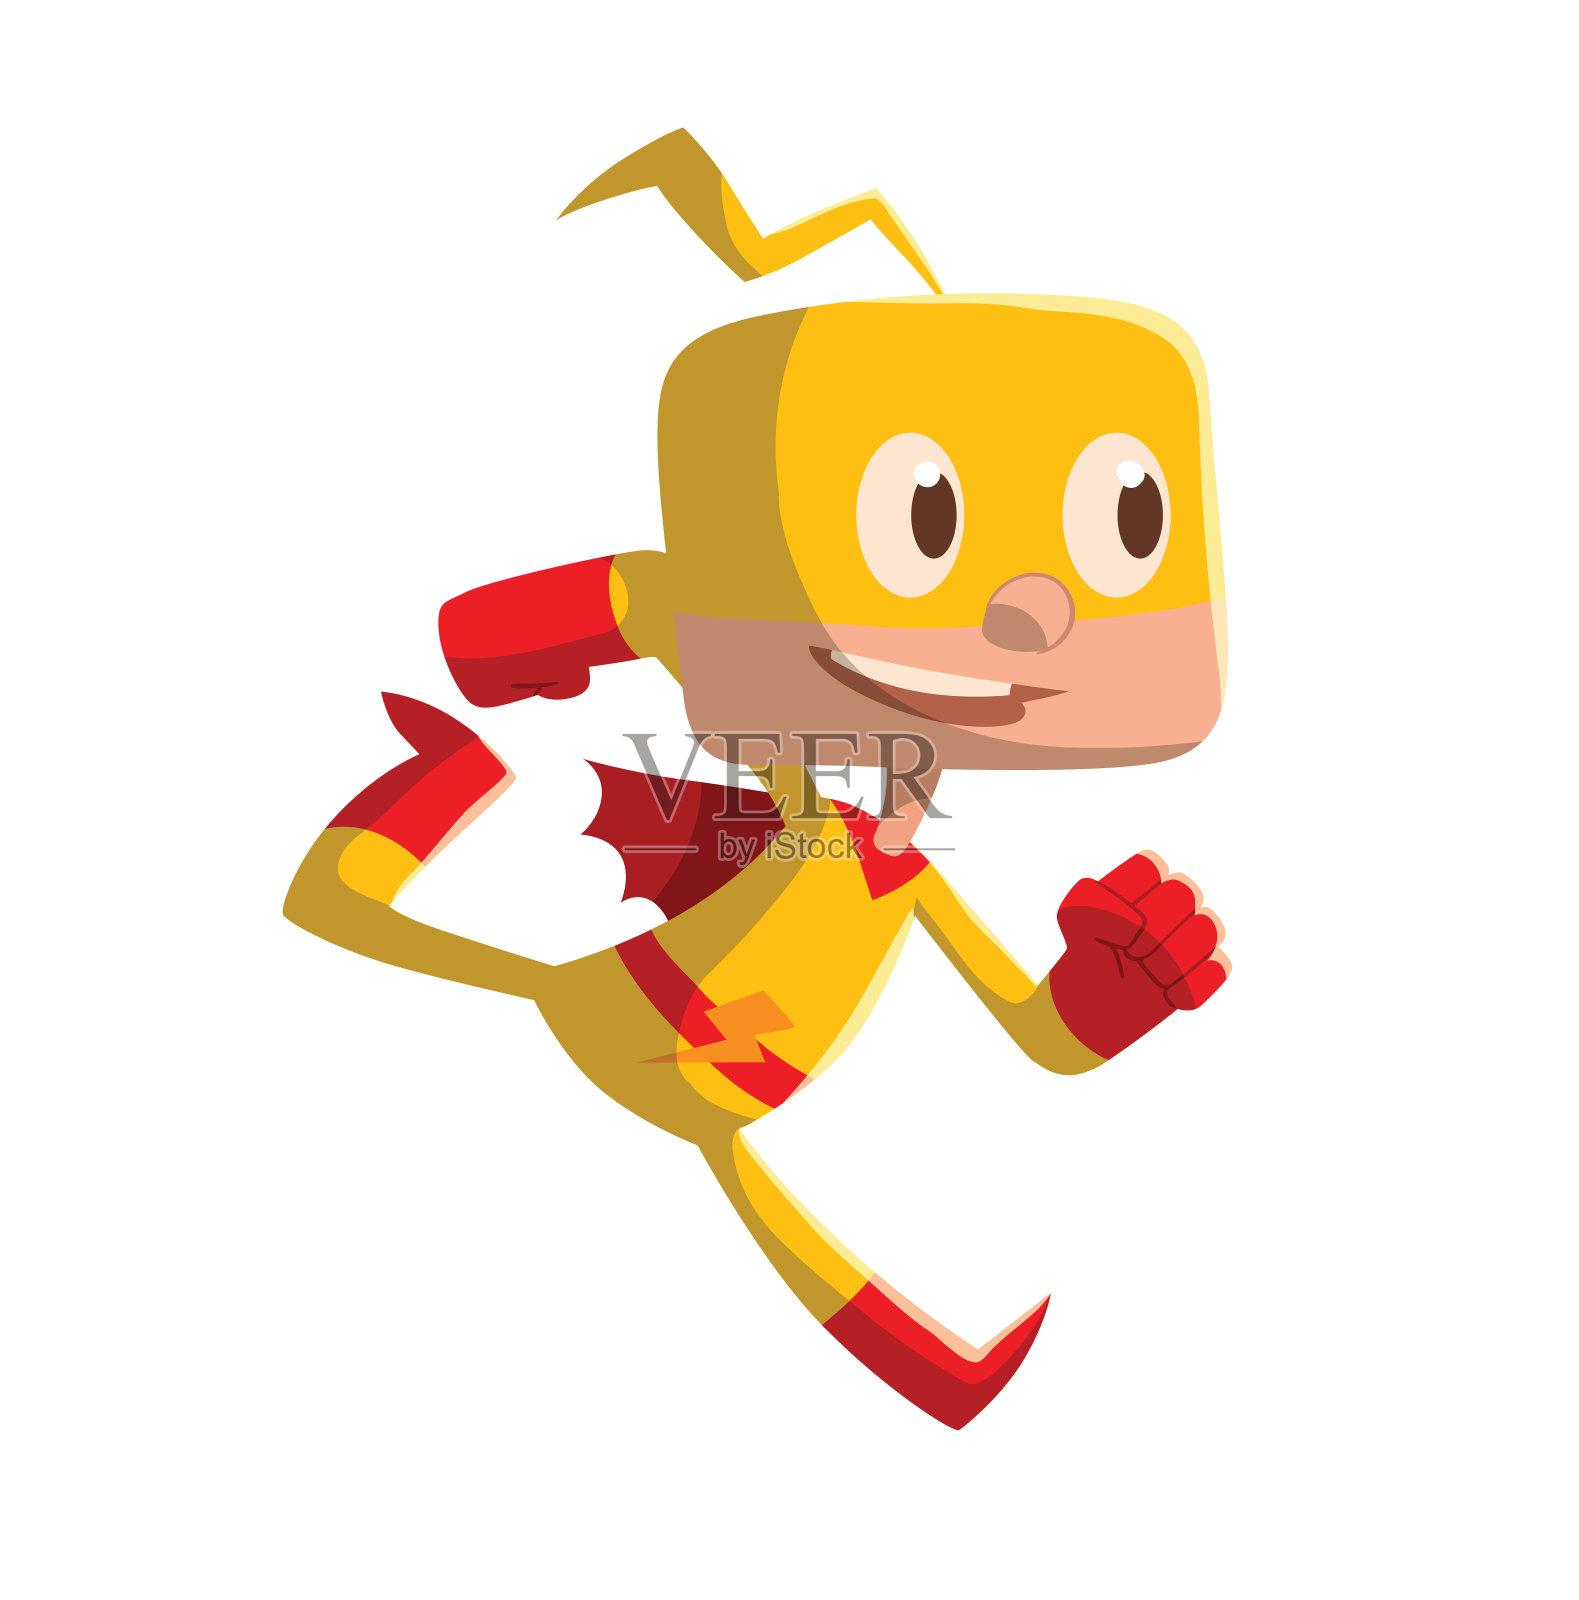 穿着黄色超级英雄服装的有趣小男孩设计元素图片